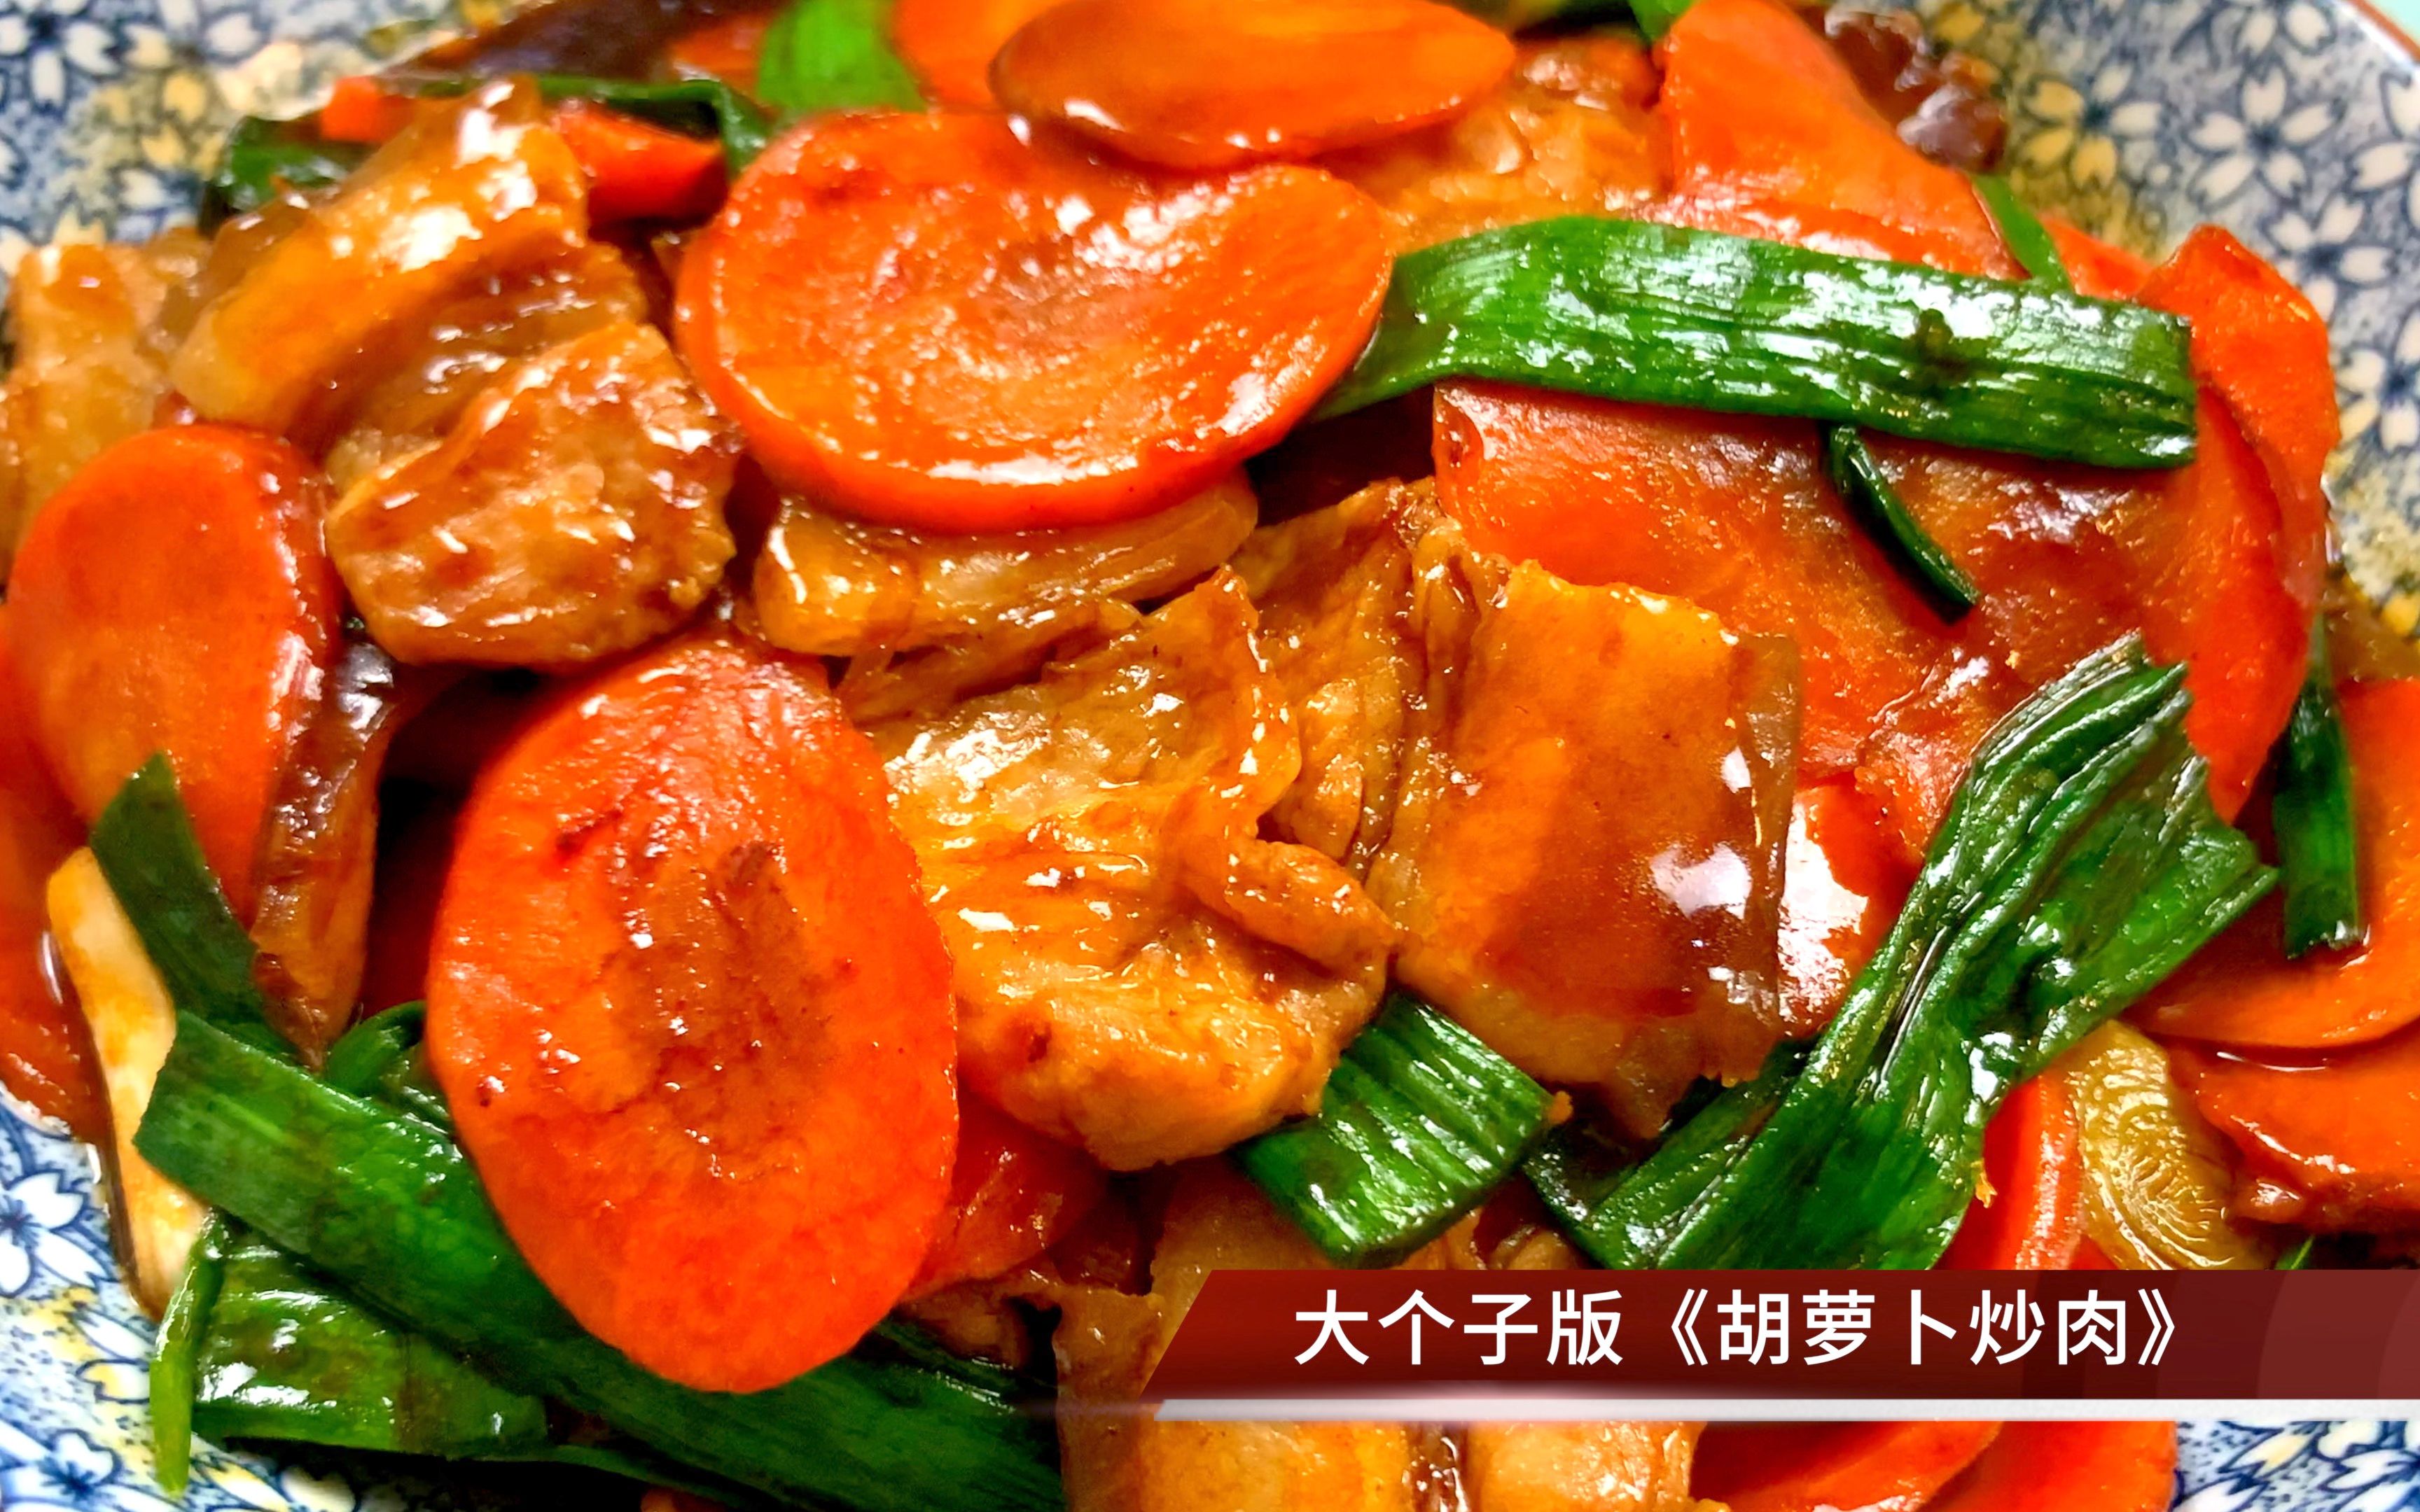 胡萝卜花菜炒牛肉,胡萝卜花菜炒牛肉的家常做法 - 美食杰胡萝卜花菜炒牛肉做法大全